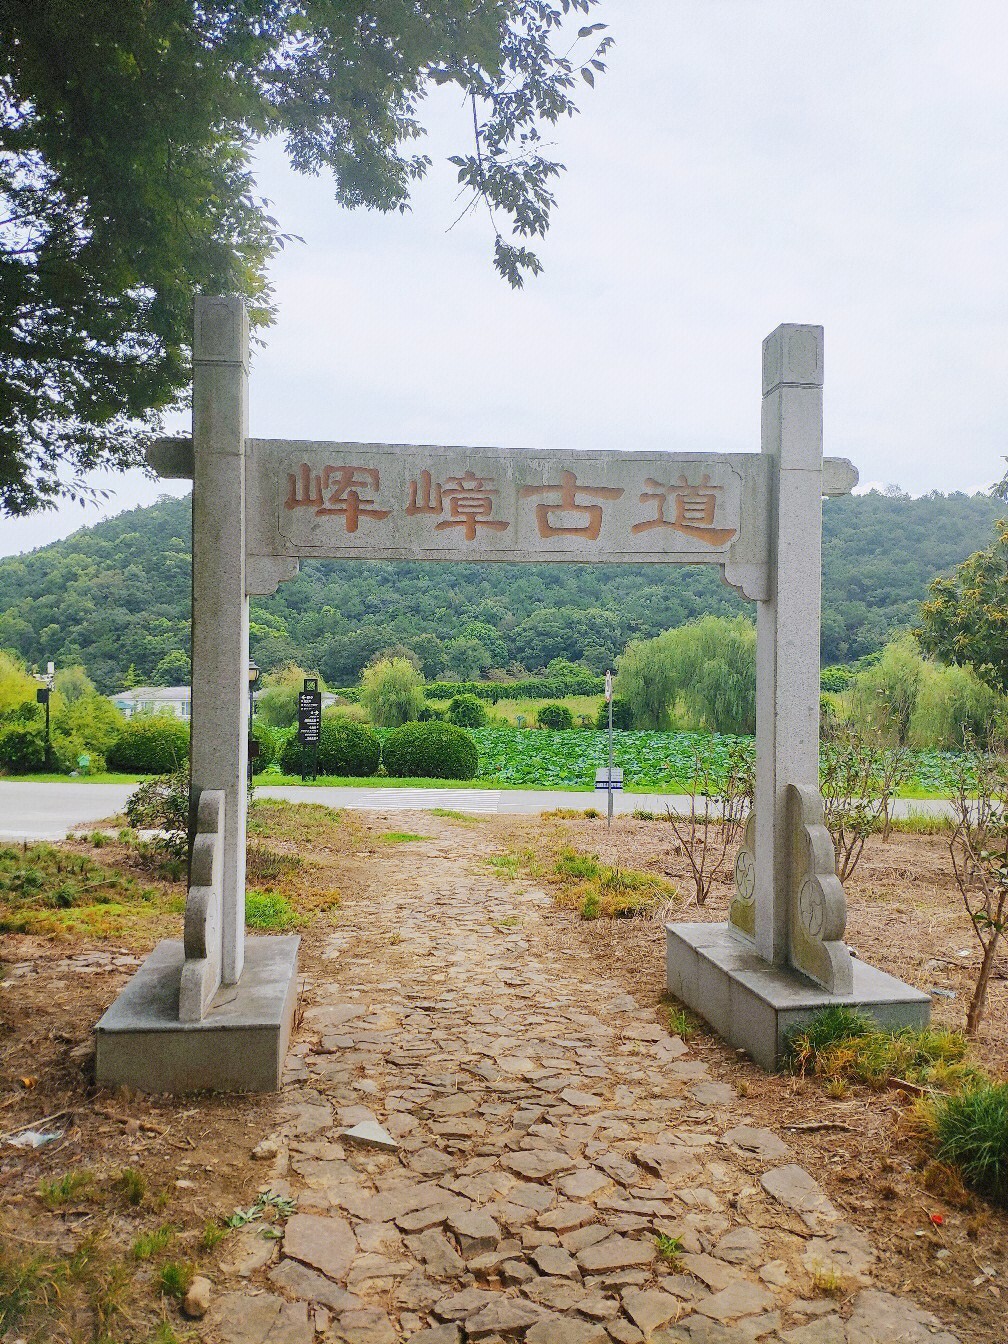 龙寺生态园全景图图片